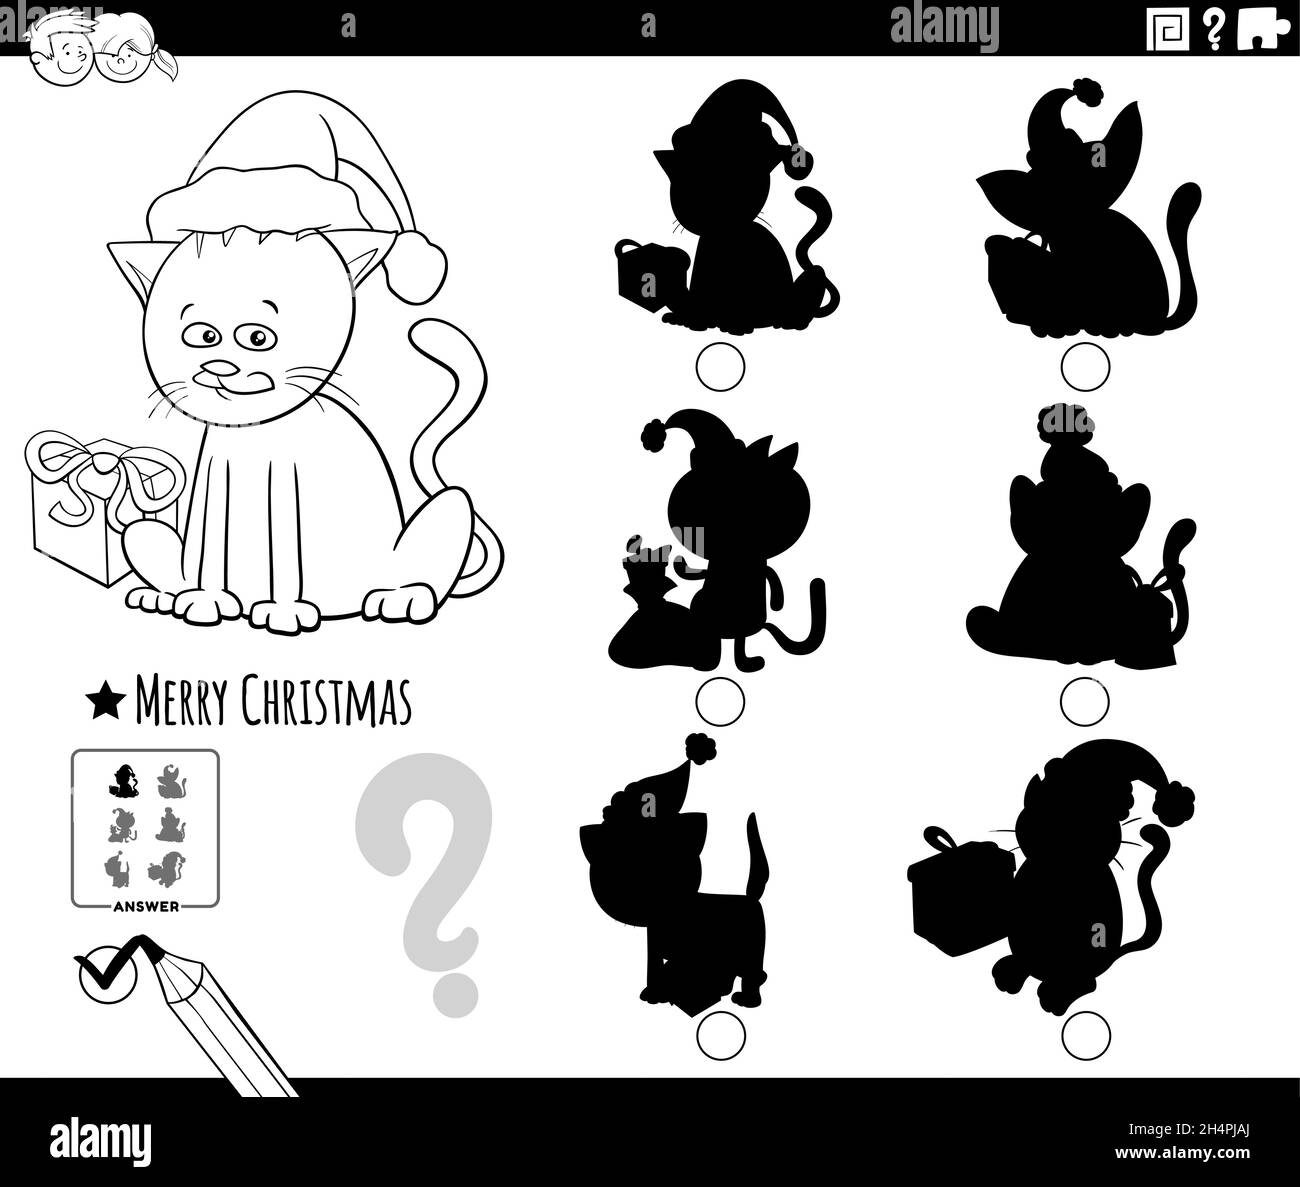 Dessin animé noir et blanc illustration de trouver la bonne image à l'ombre jeu éducatif pour les enfants avec le personnage de chat sur le temps de Noël col Illustration de Vecteur